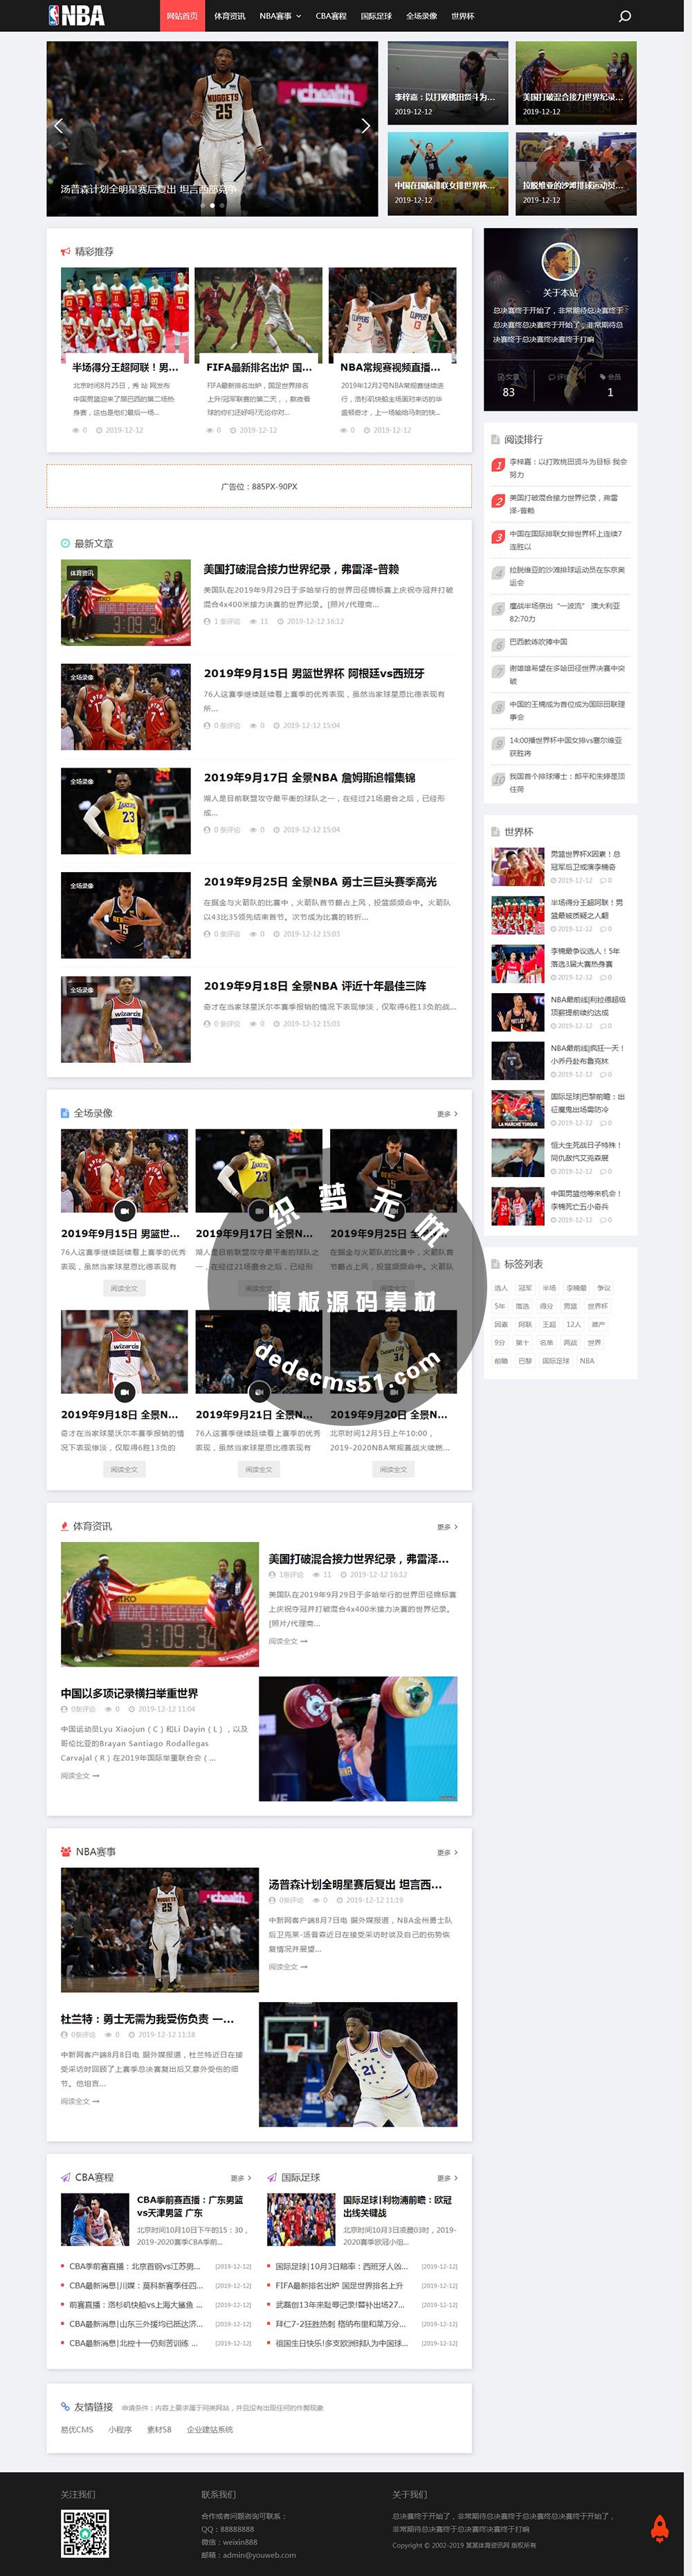 html5响应式NBA体育赛事体育新闻资讯资讯博客类织梦模板dede模板下载(自适应手机)